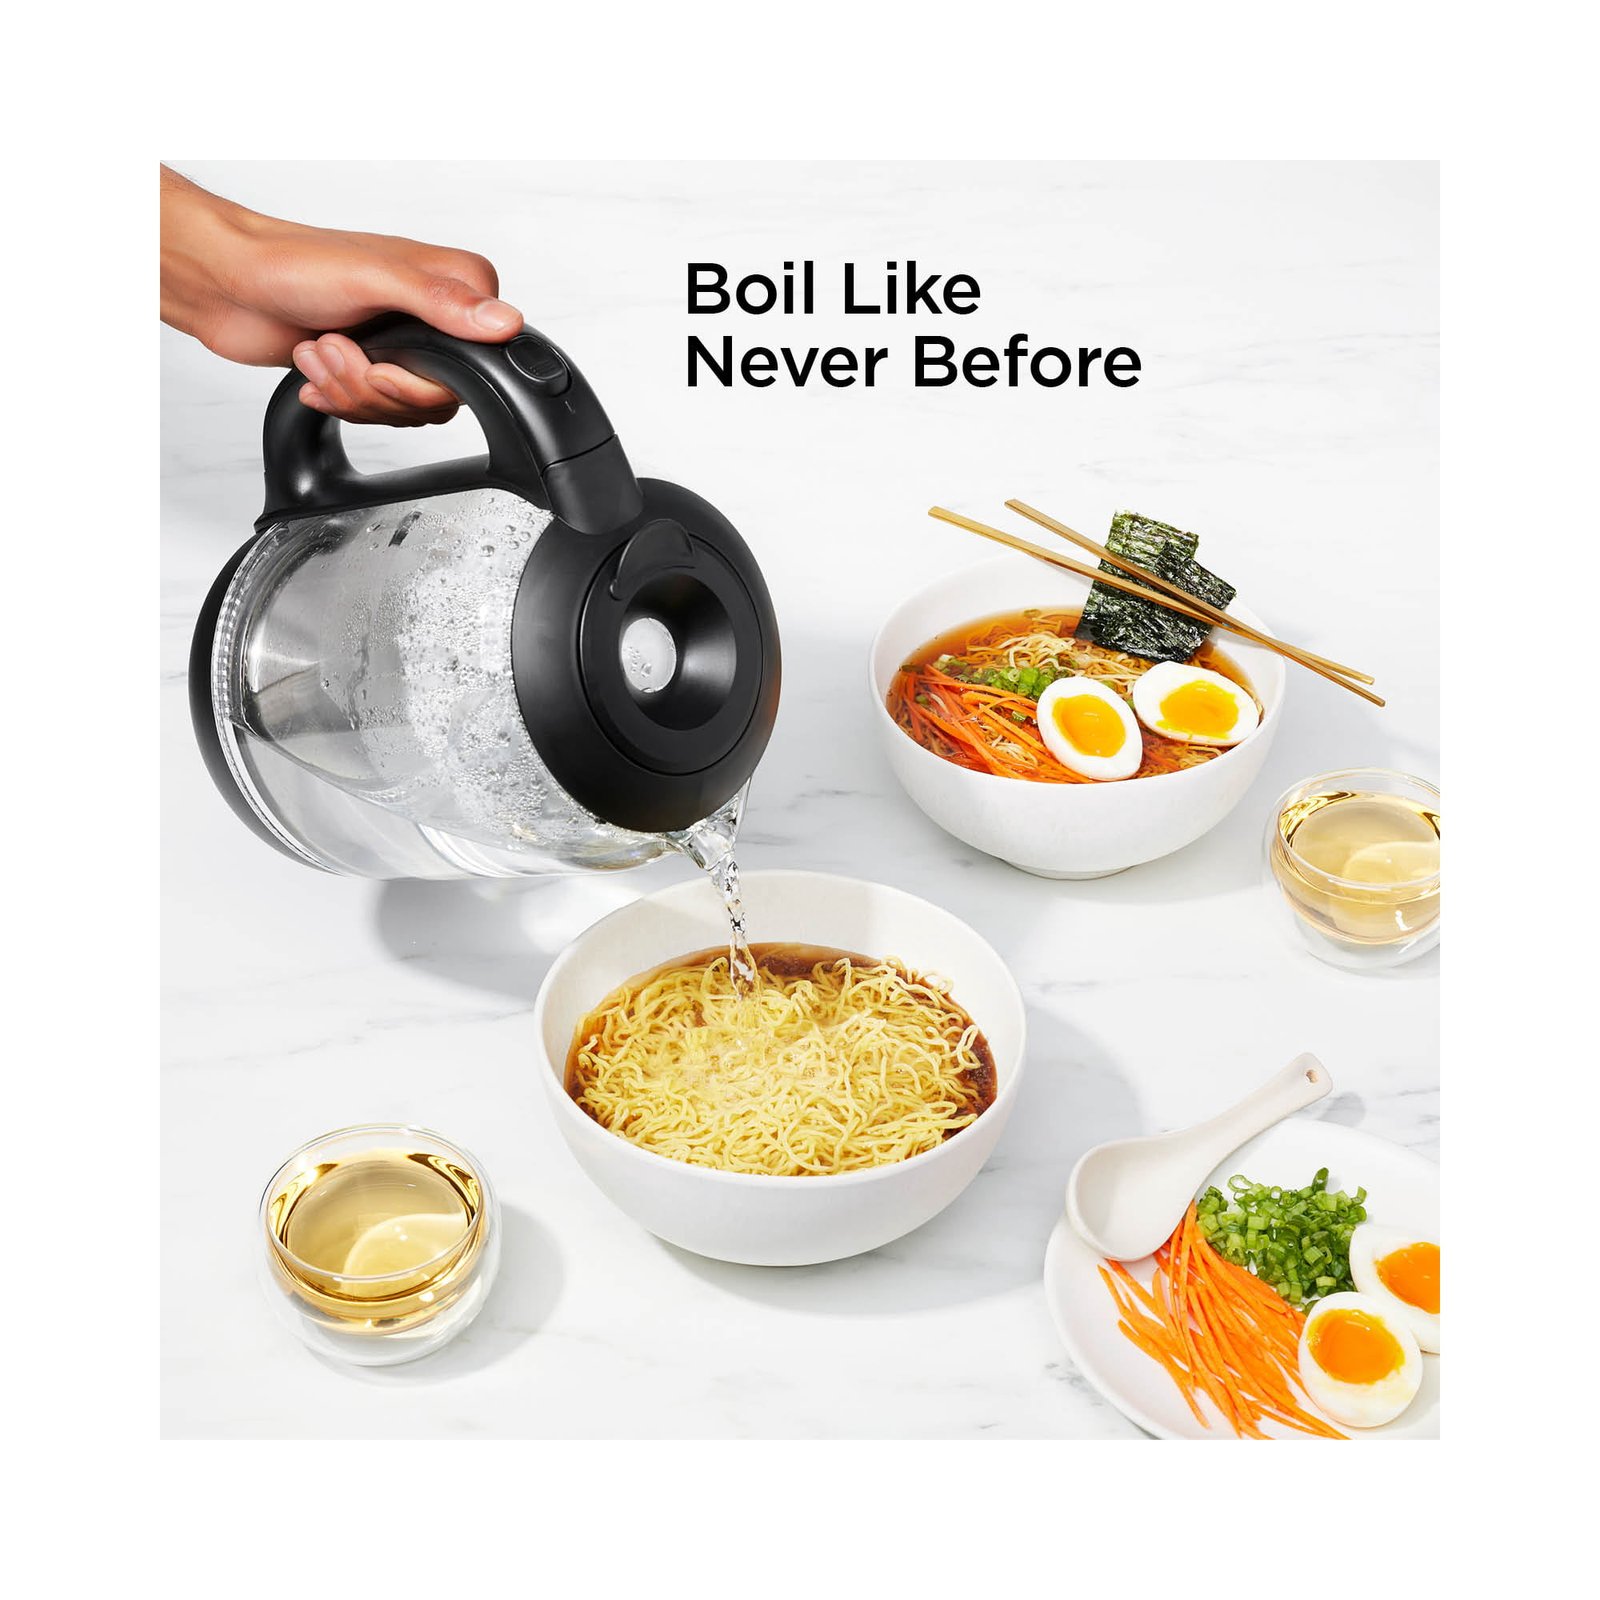 https://themarketdepot.com/wp-content/uploads/2023/01/Chefman-Easy-Fill-Electric-Kettle-1.7-Liter-Matte-Black-1.jpeg